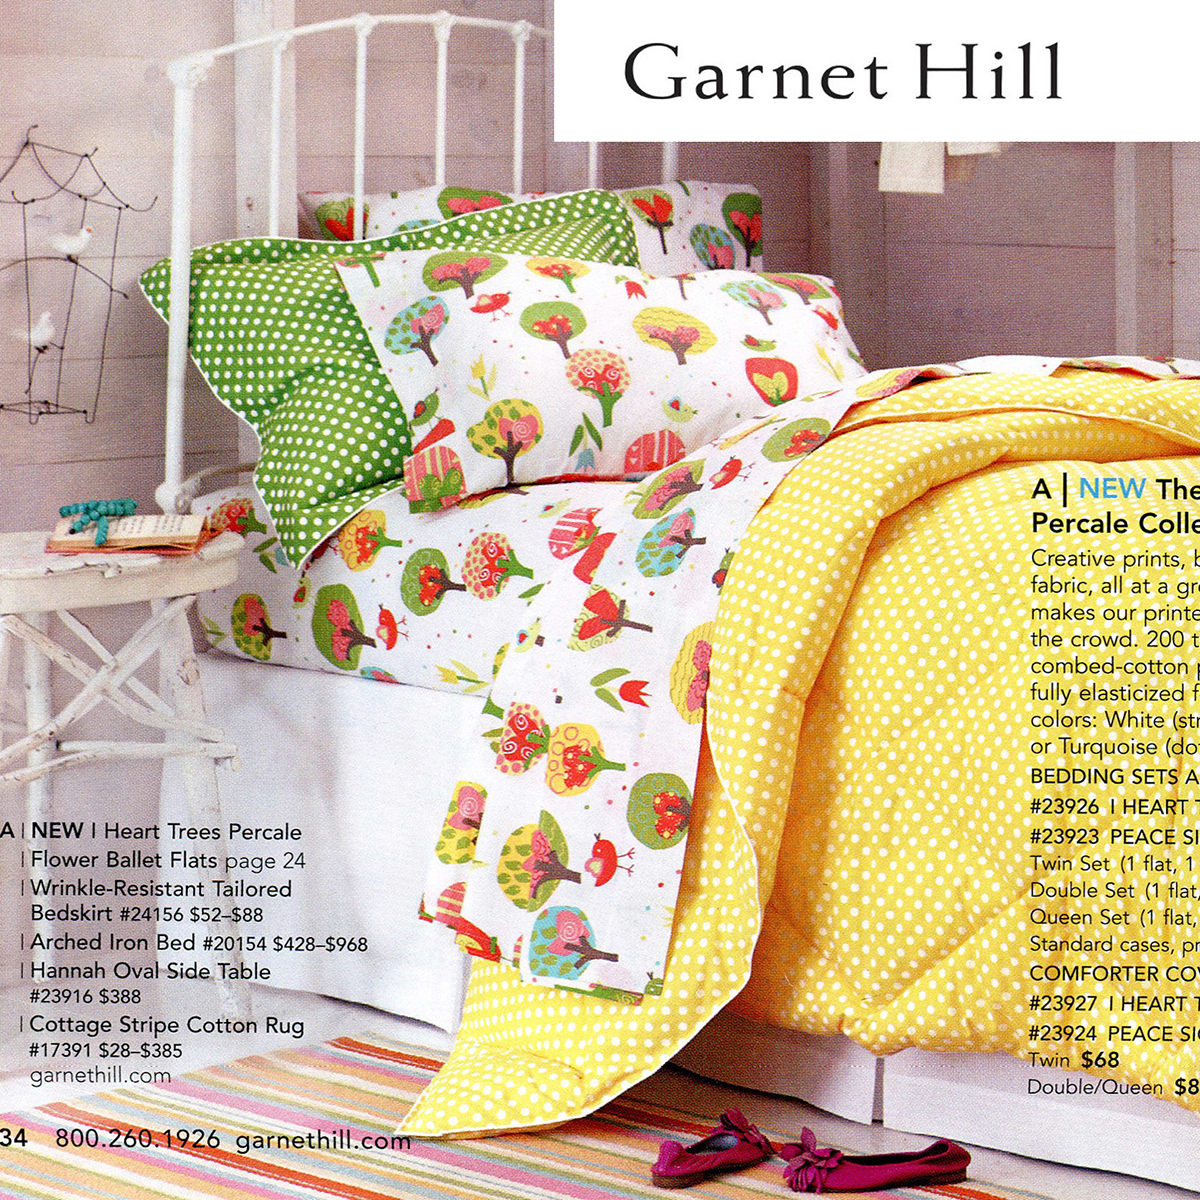 Garnet Hill